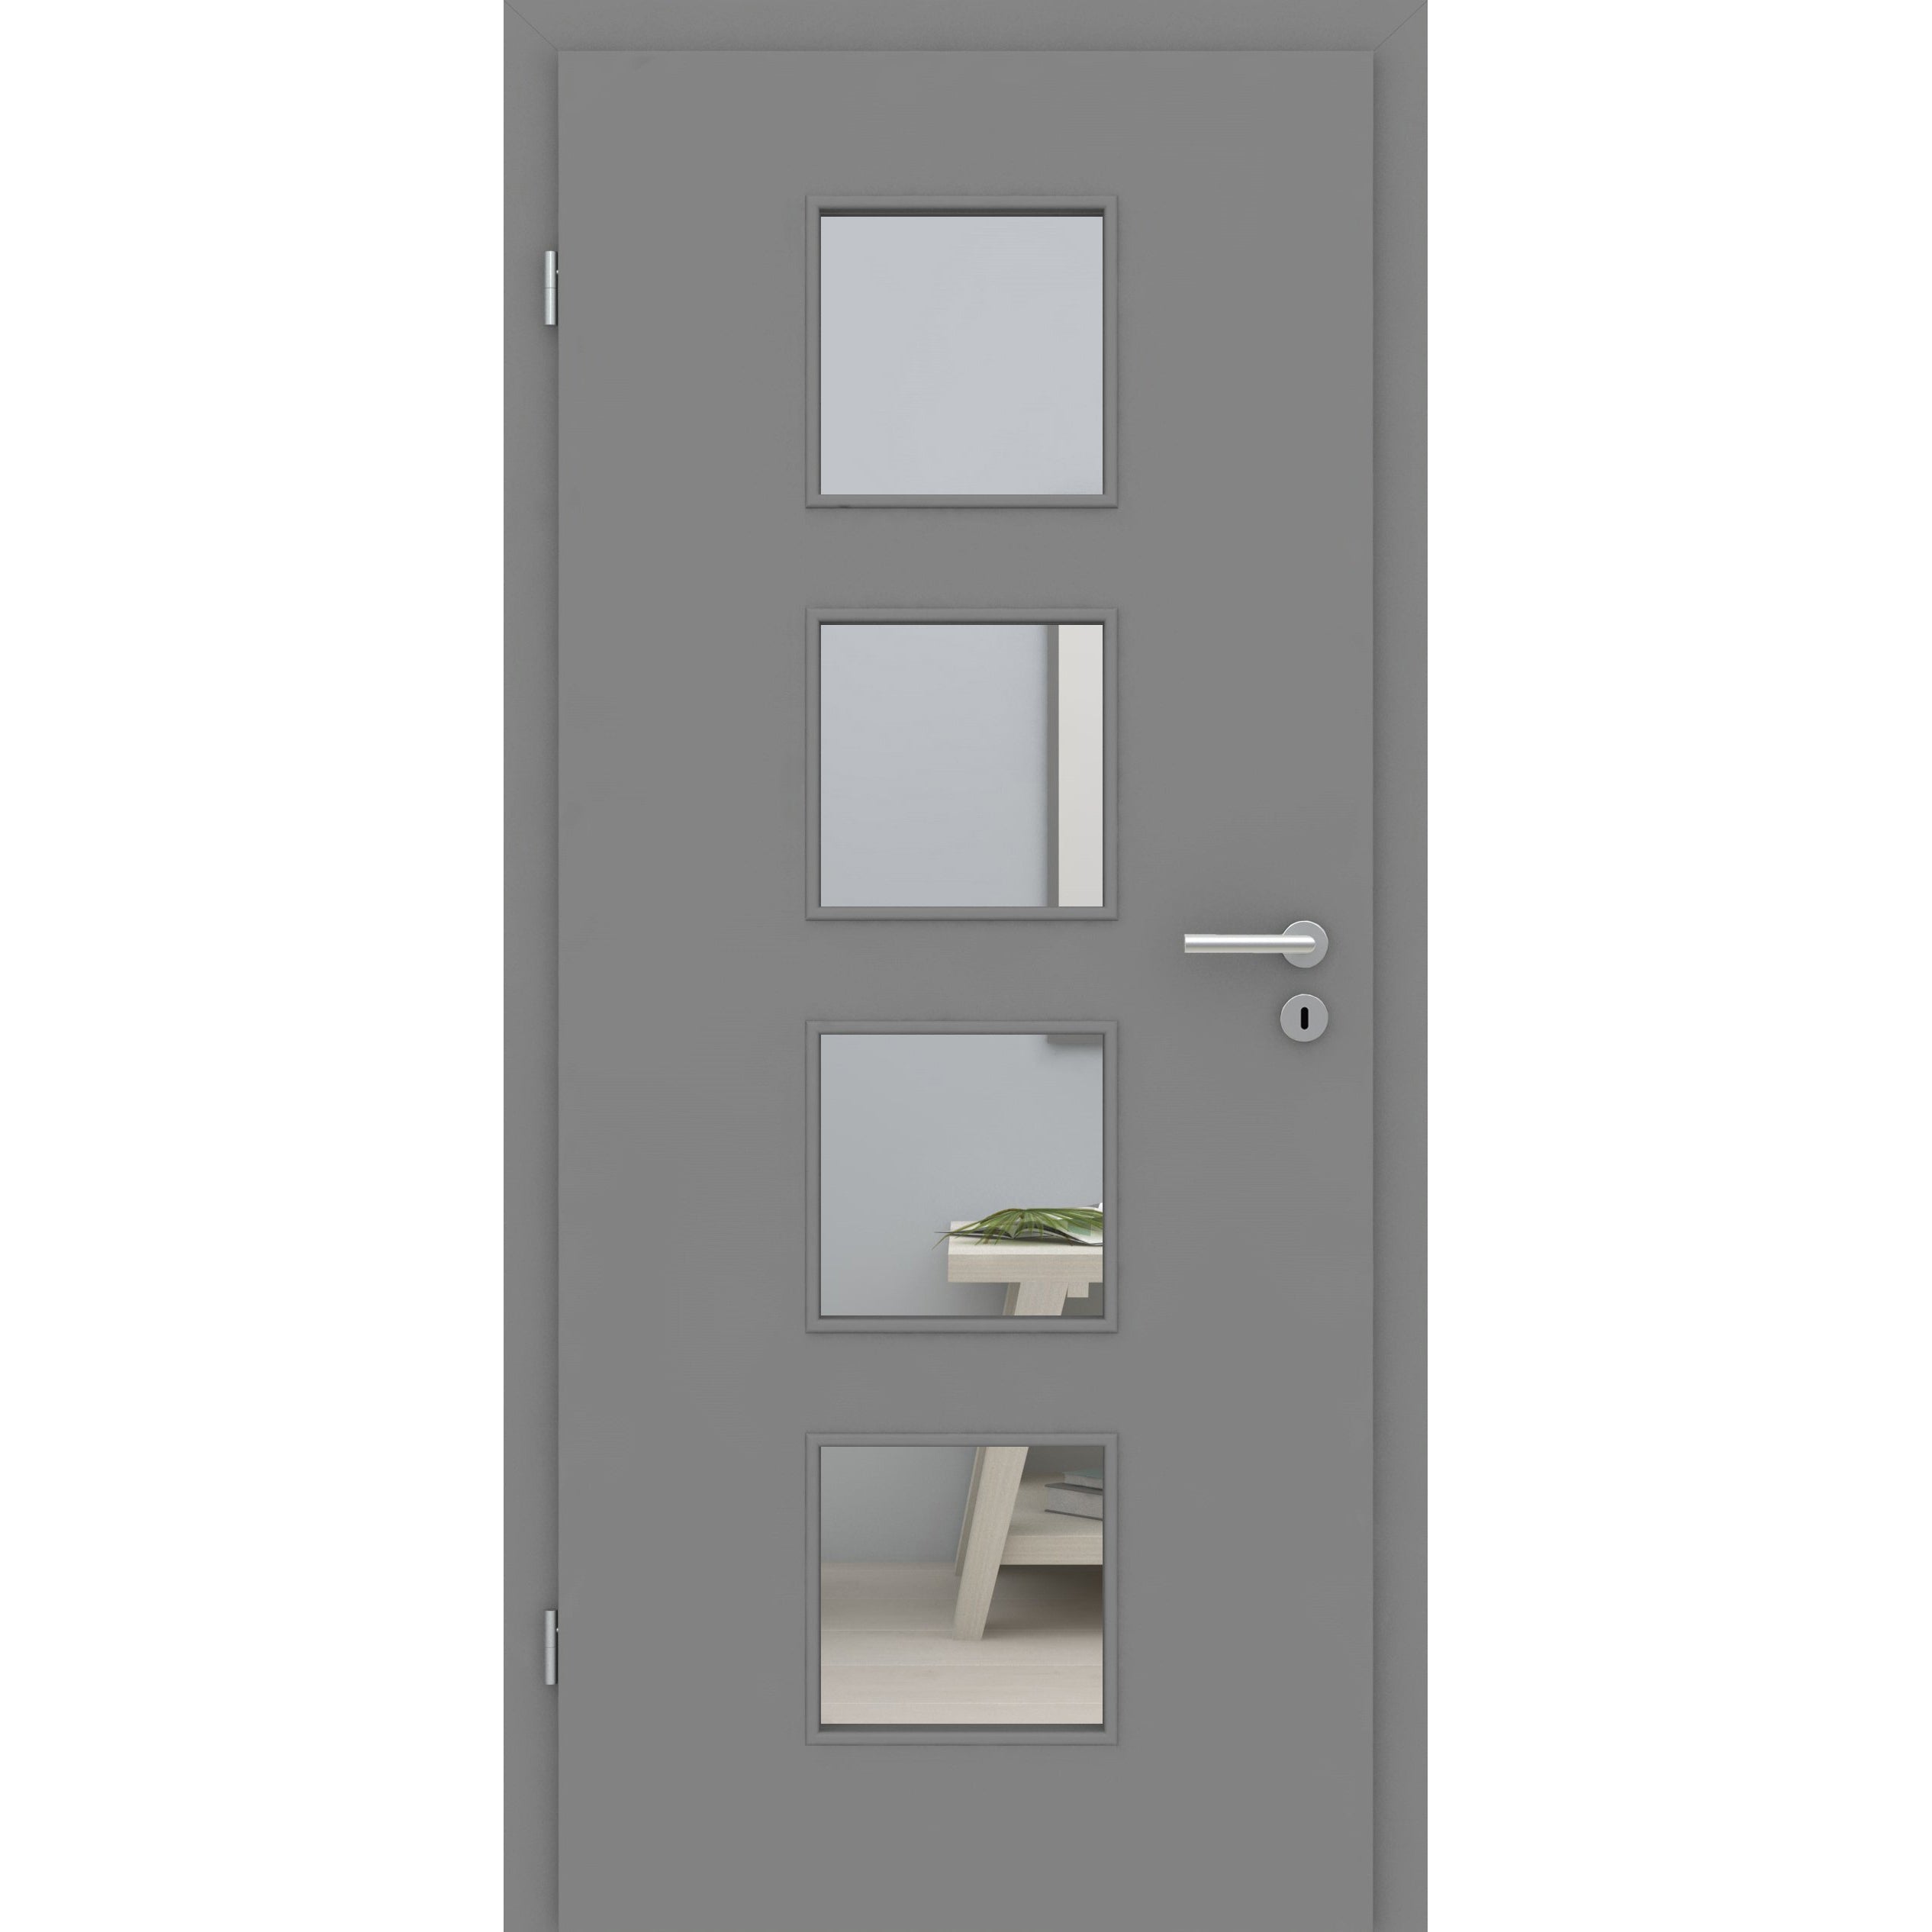 Zimmertür mit Zarge und Lichtausschnitt grau glatt Designkante - Modell LA4